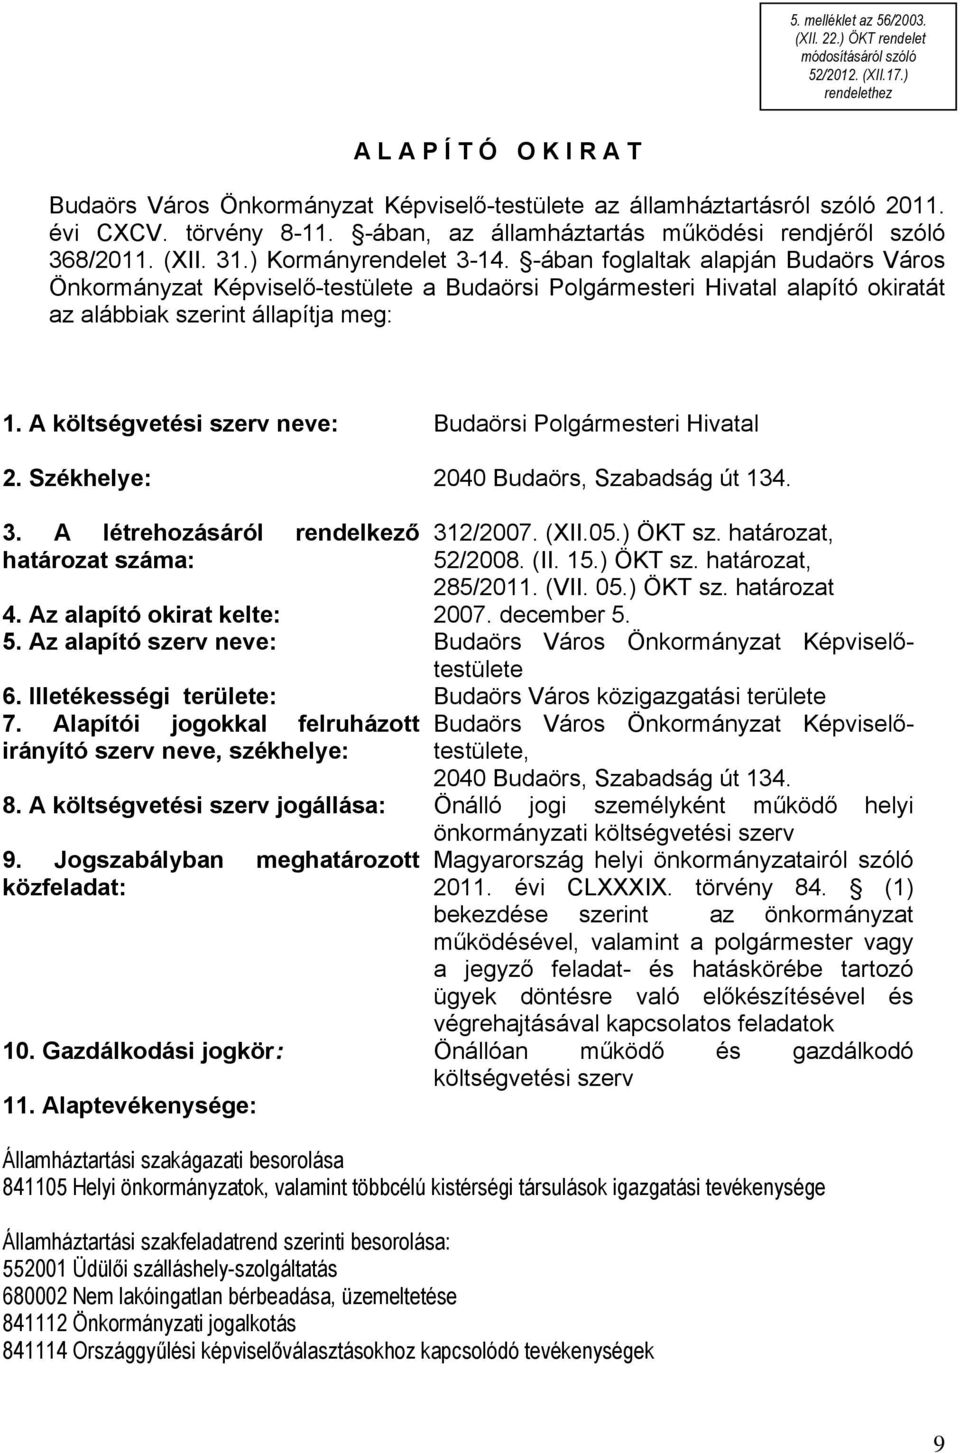 -ában, az államháztartás működési rendjéről szóló 368/2011. (XII. 31.) Kormányrendelet 3-14.